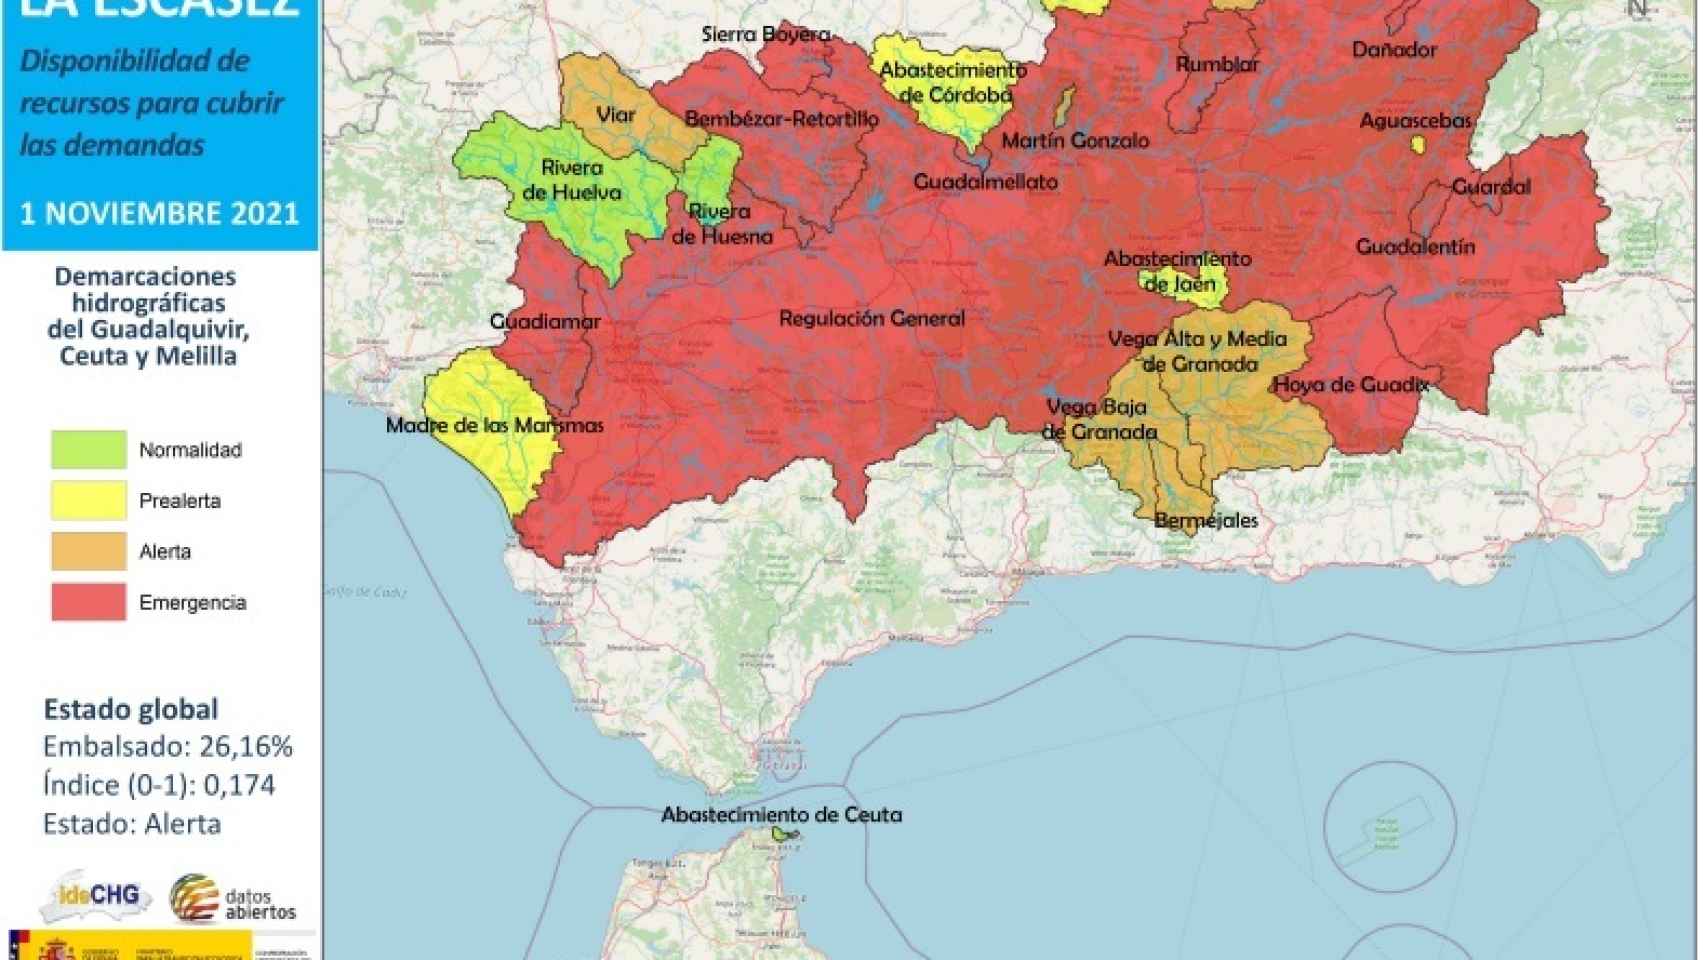 Mapa de la cuenca del Guadalquivir con la zona afectada por la sequía extraordinaria